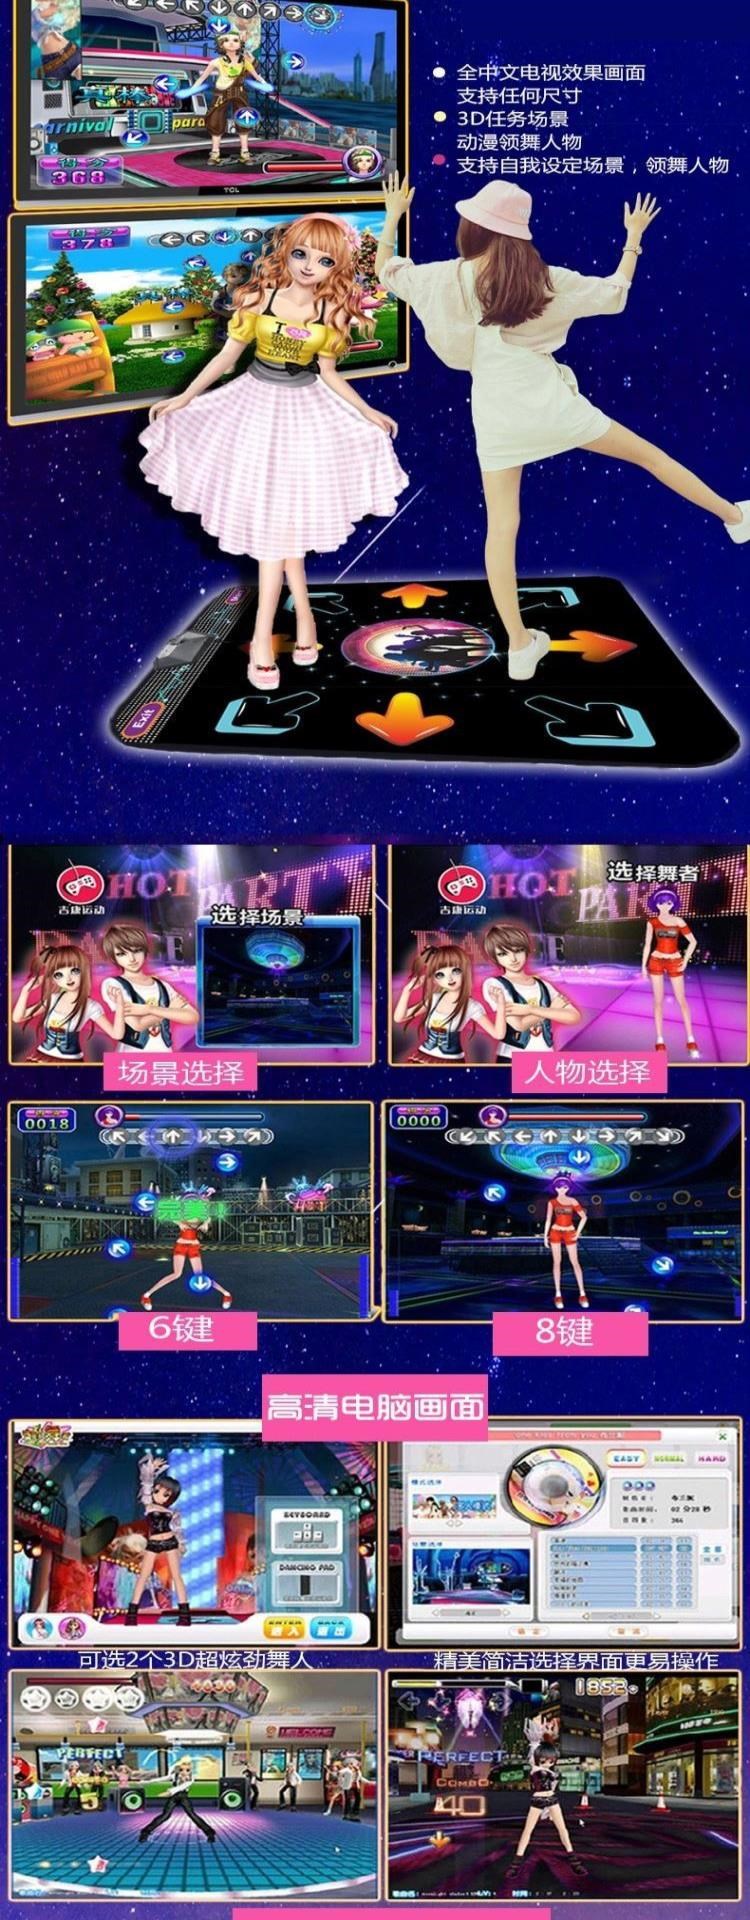 Thảm khiêu vũ đôi không dây Máy khiêu vũ somatosensory tại nhà TV máy tính giao diện sử dụng kép thể thao chạy trò chơi chăn - Dance pad